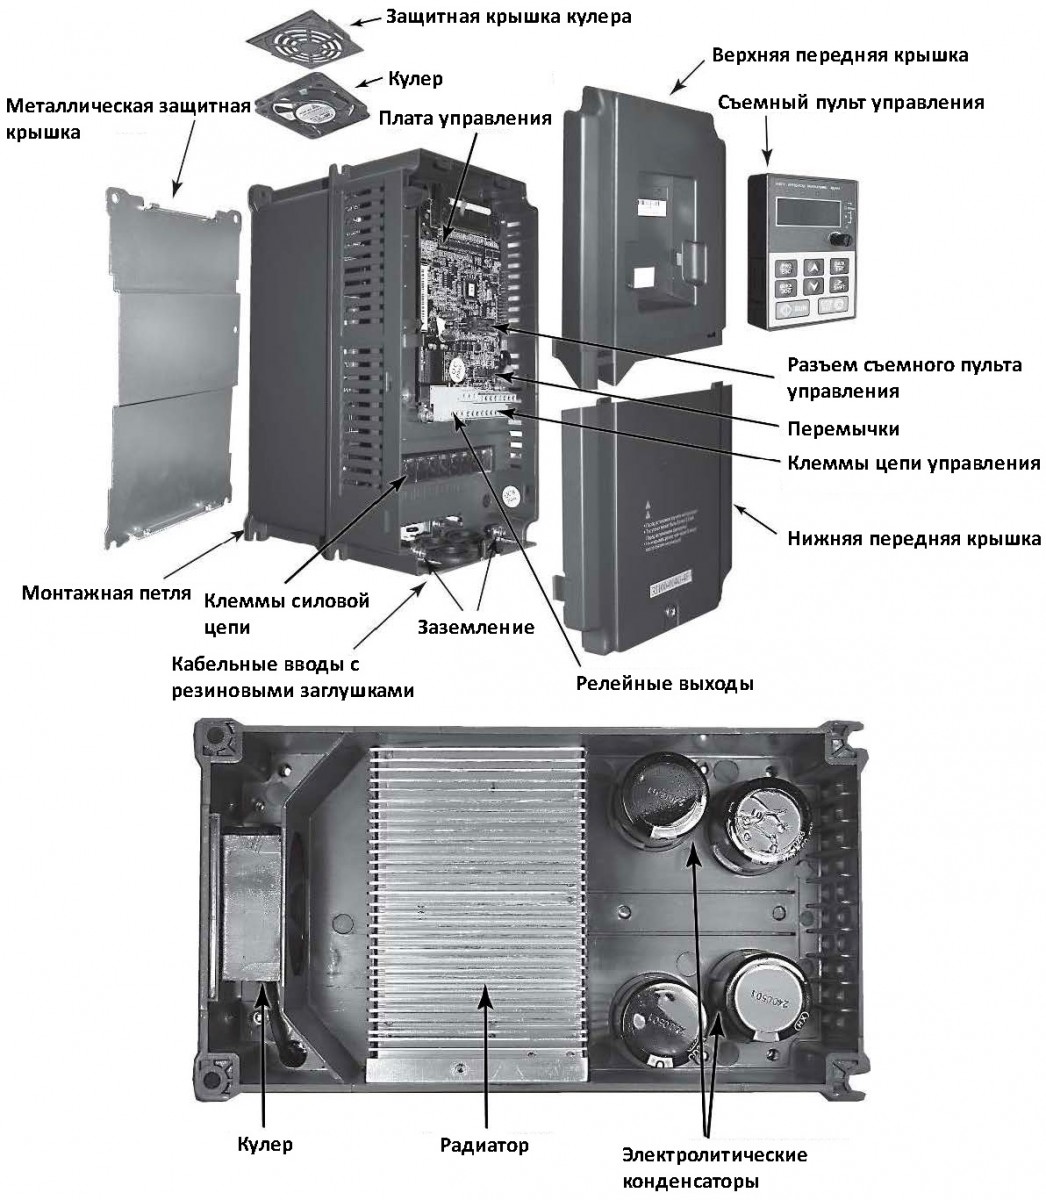 Преобразователь частоты INVT 380 В GD100-1R5G-4